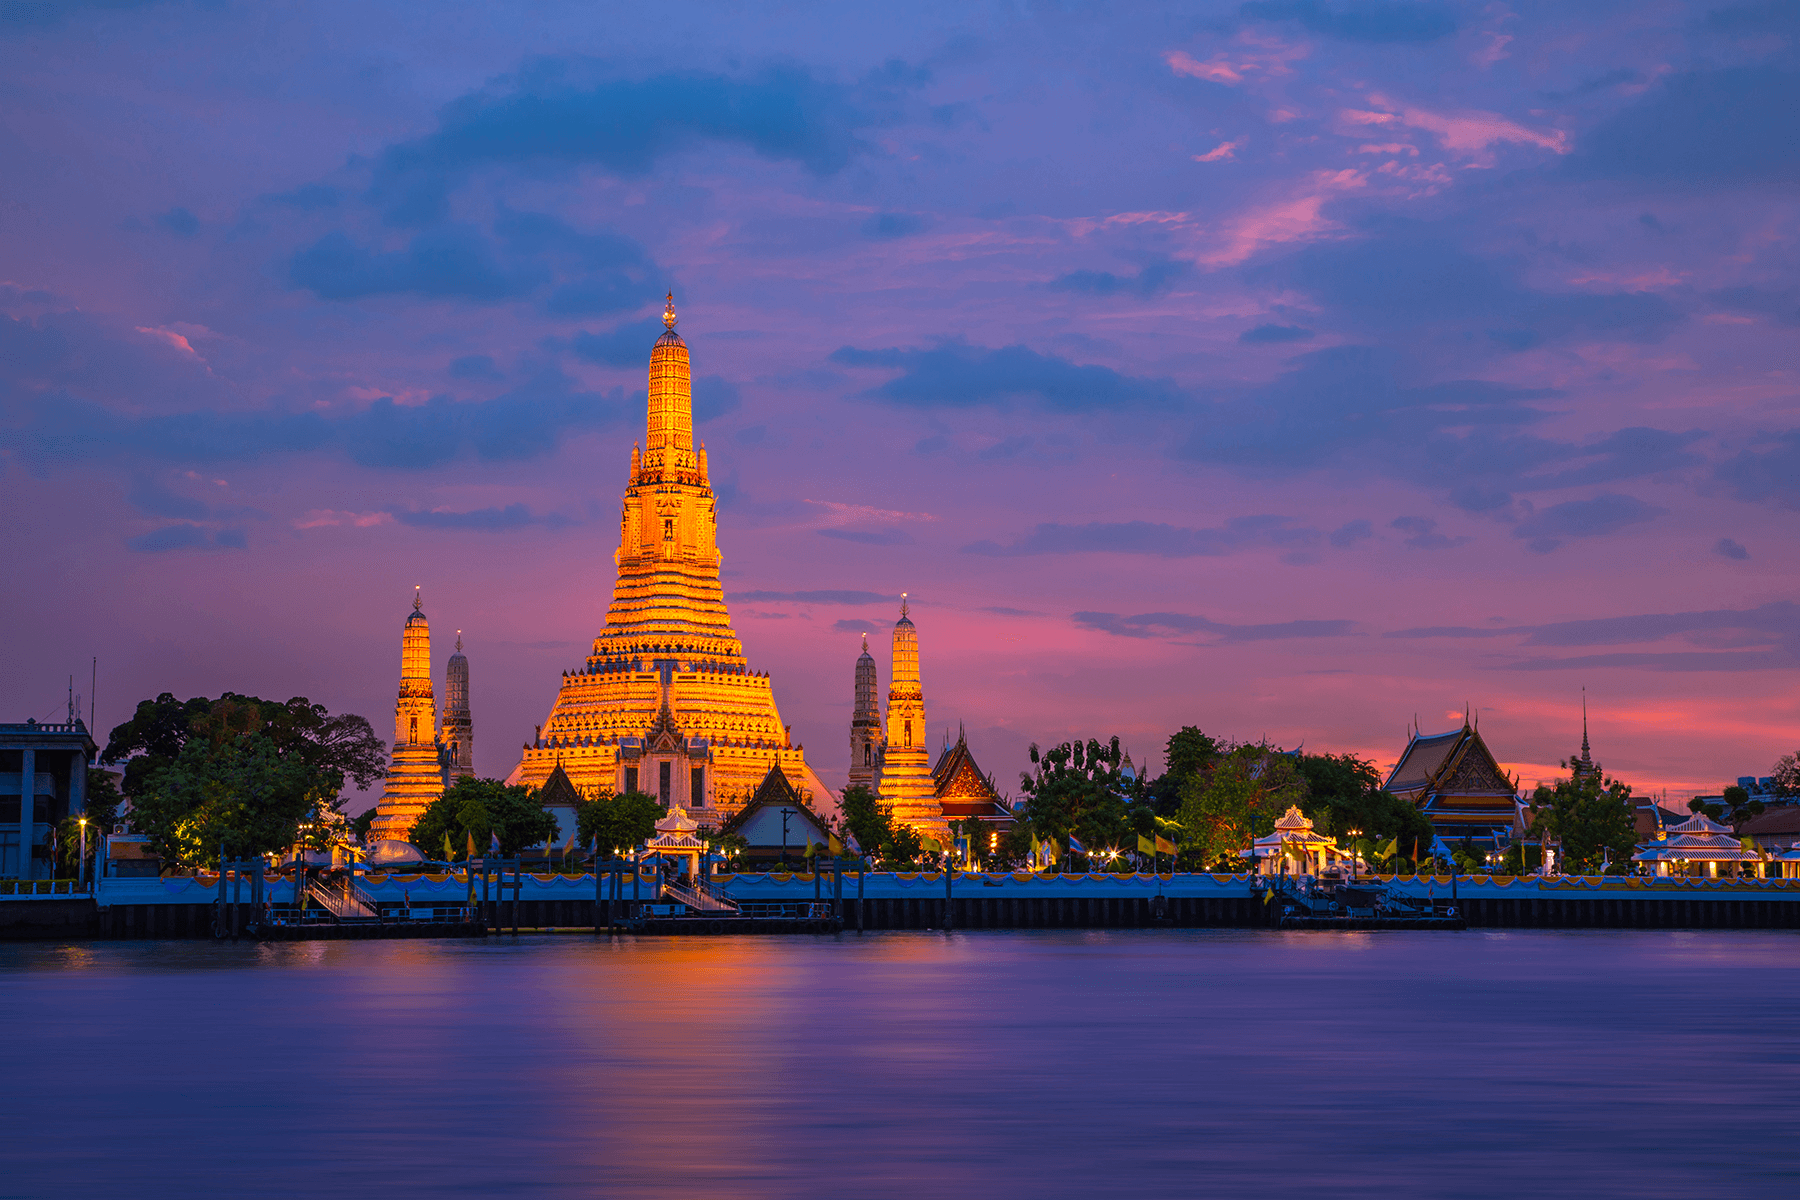 Source: Tourism Thailand